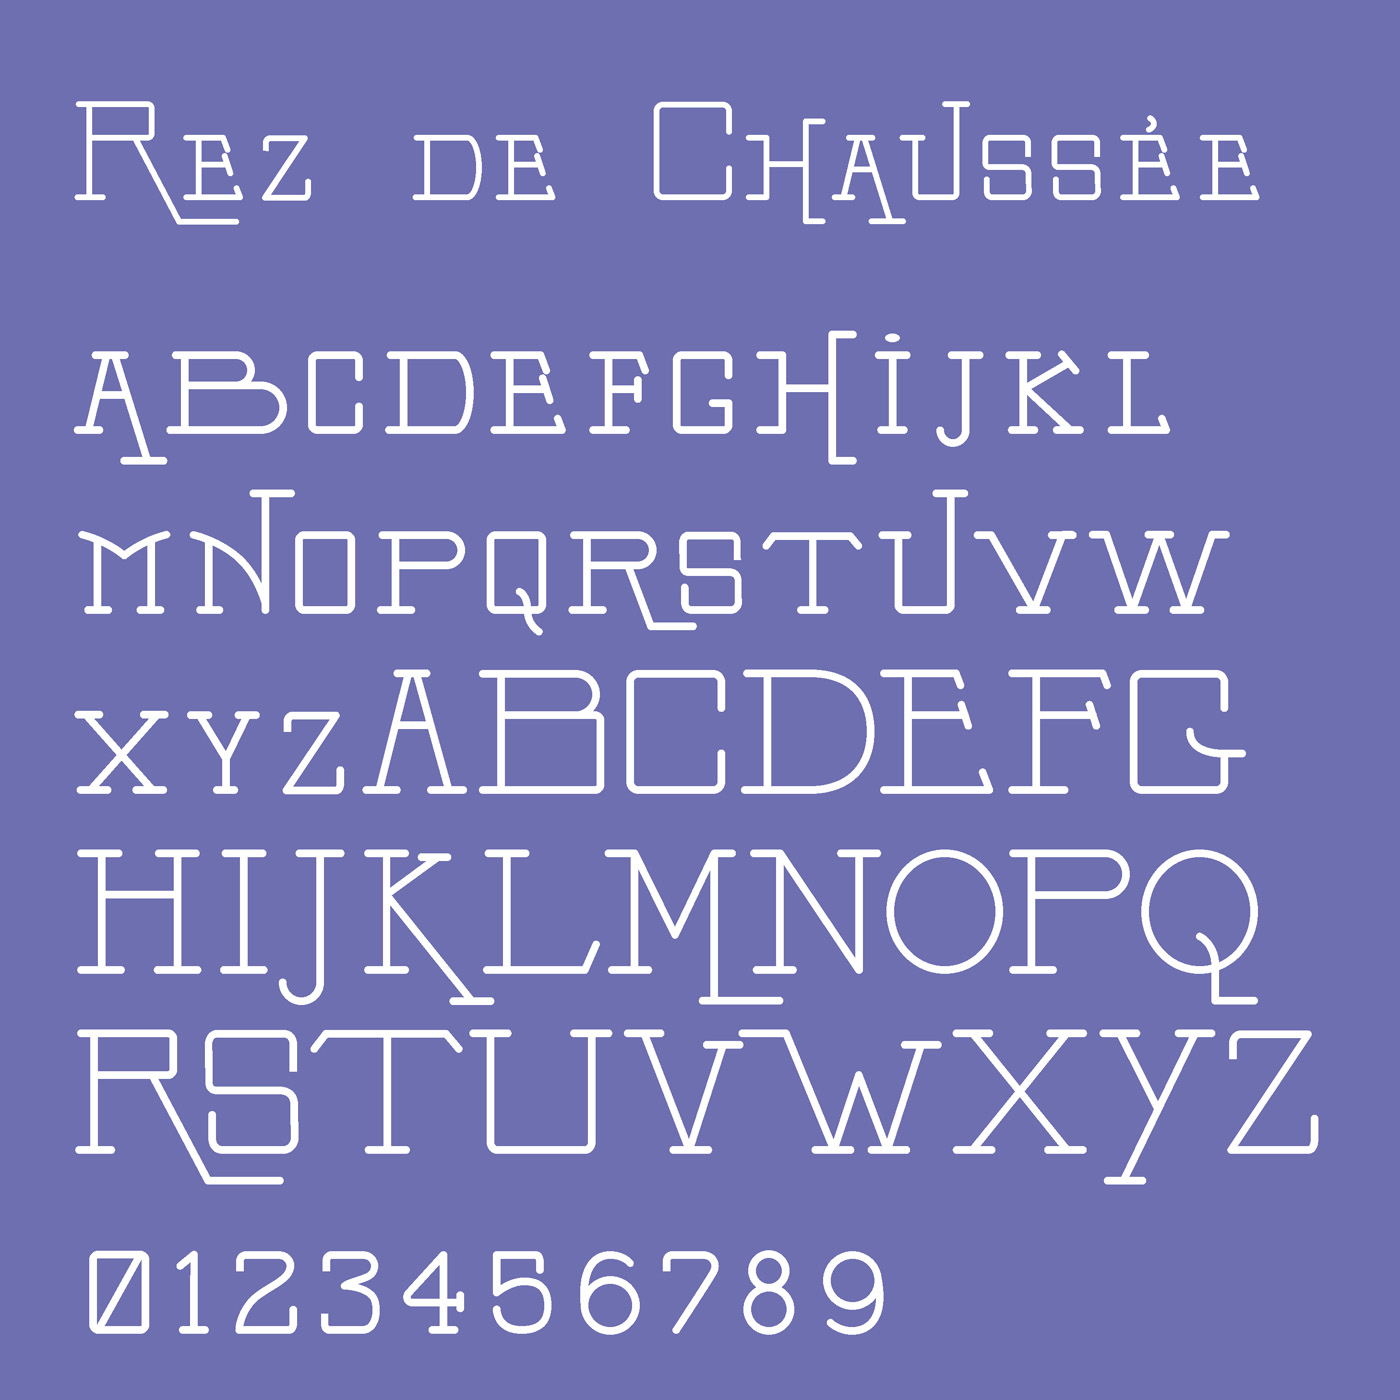 Rex de Chaussee typeface designed by Thomas Bush